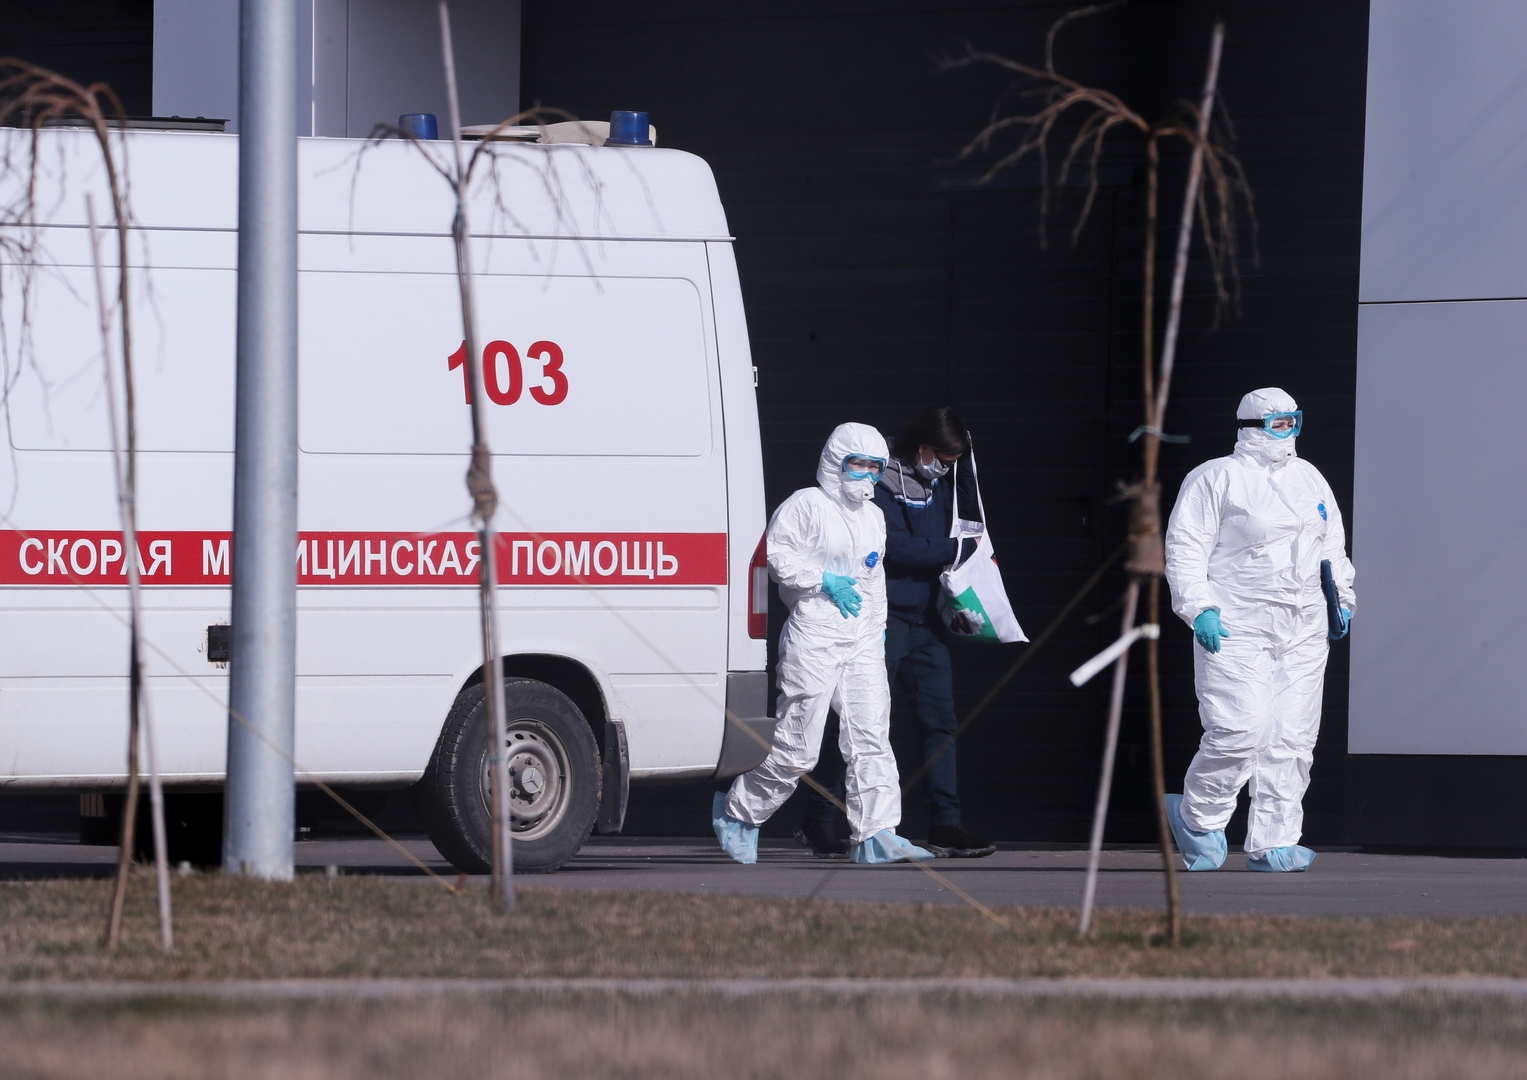 ارتفاع عدد الإصابات بفيروس كورونا المستجد في روسيا من 114 إلى 147 حالة